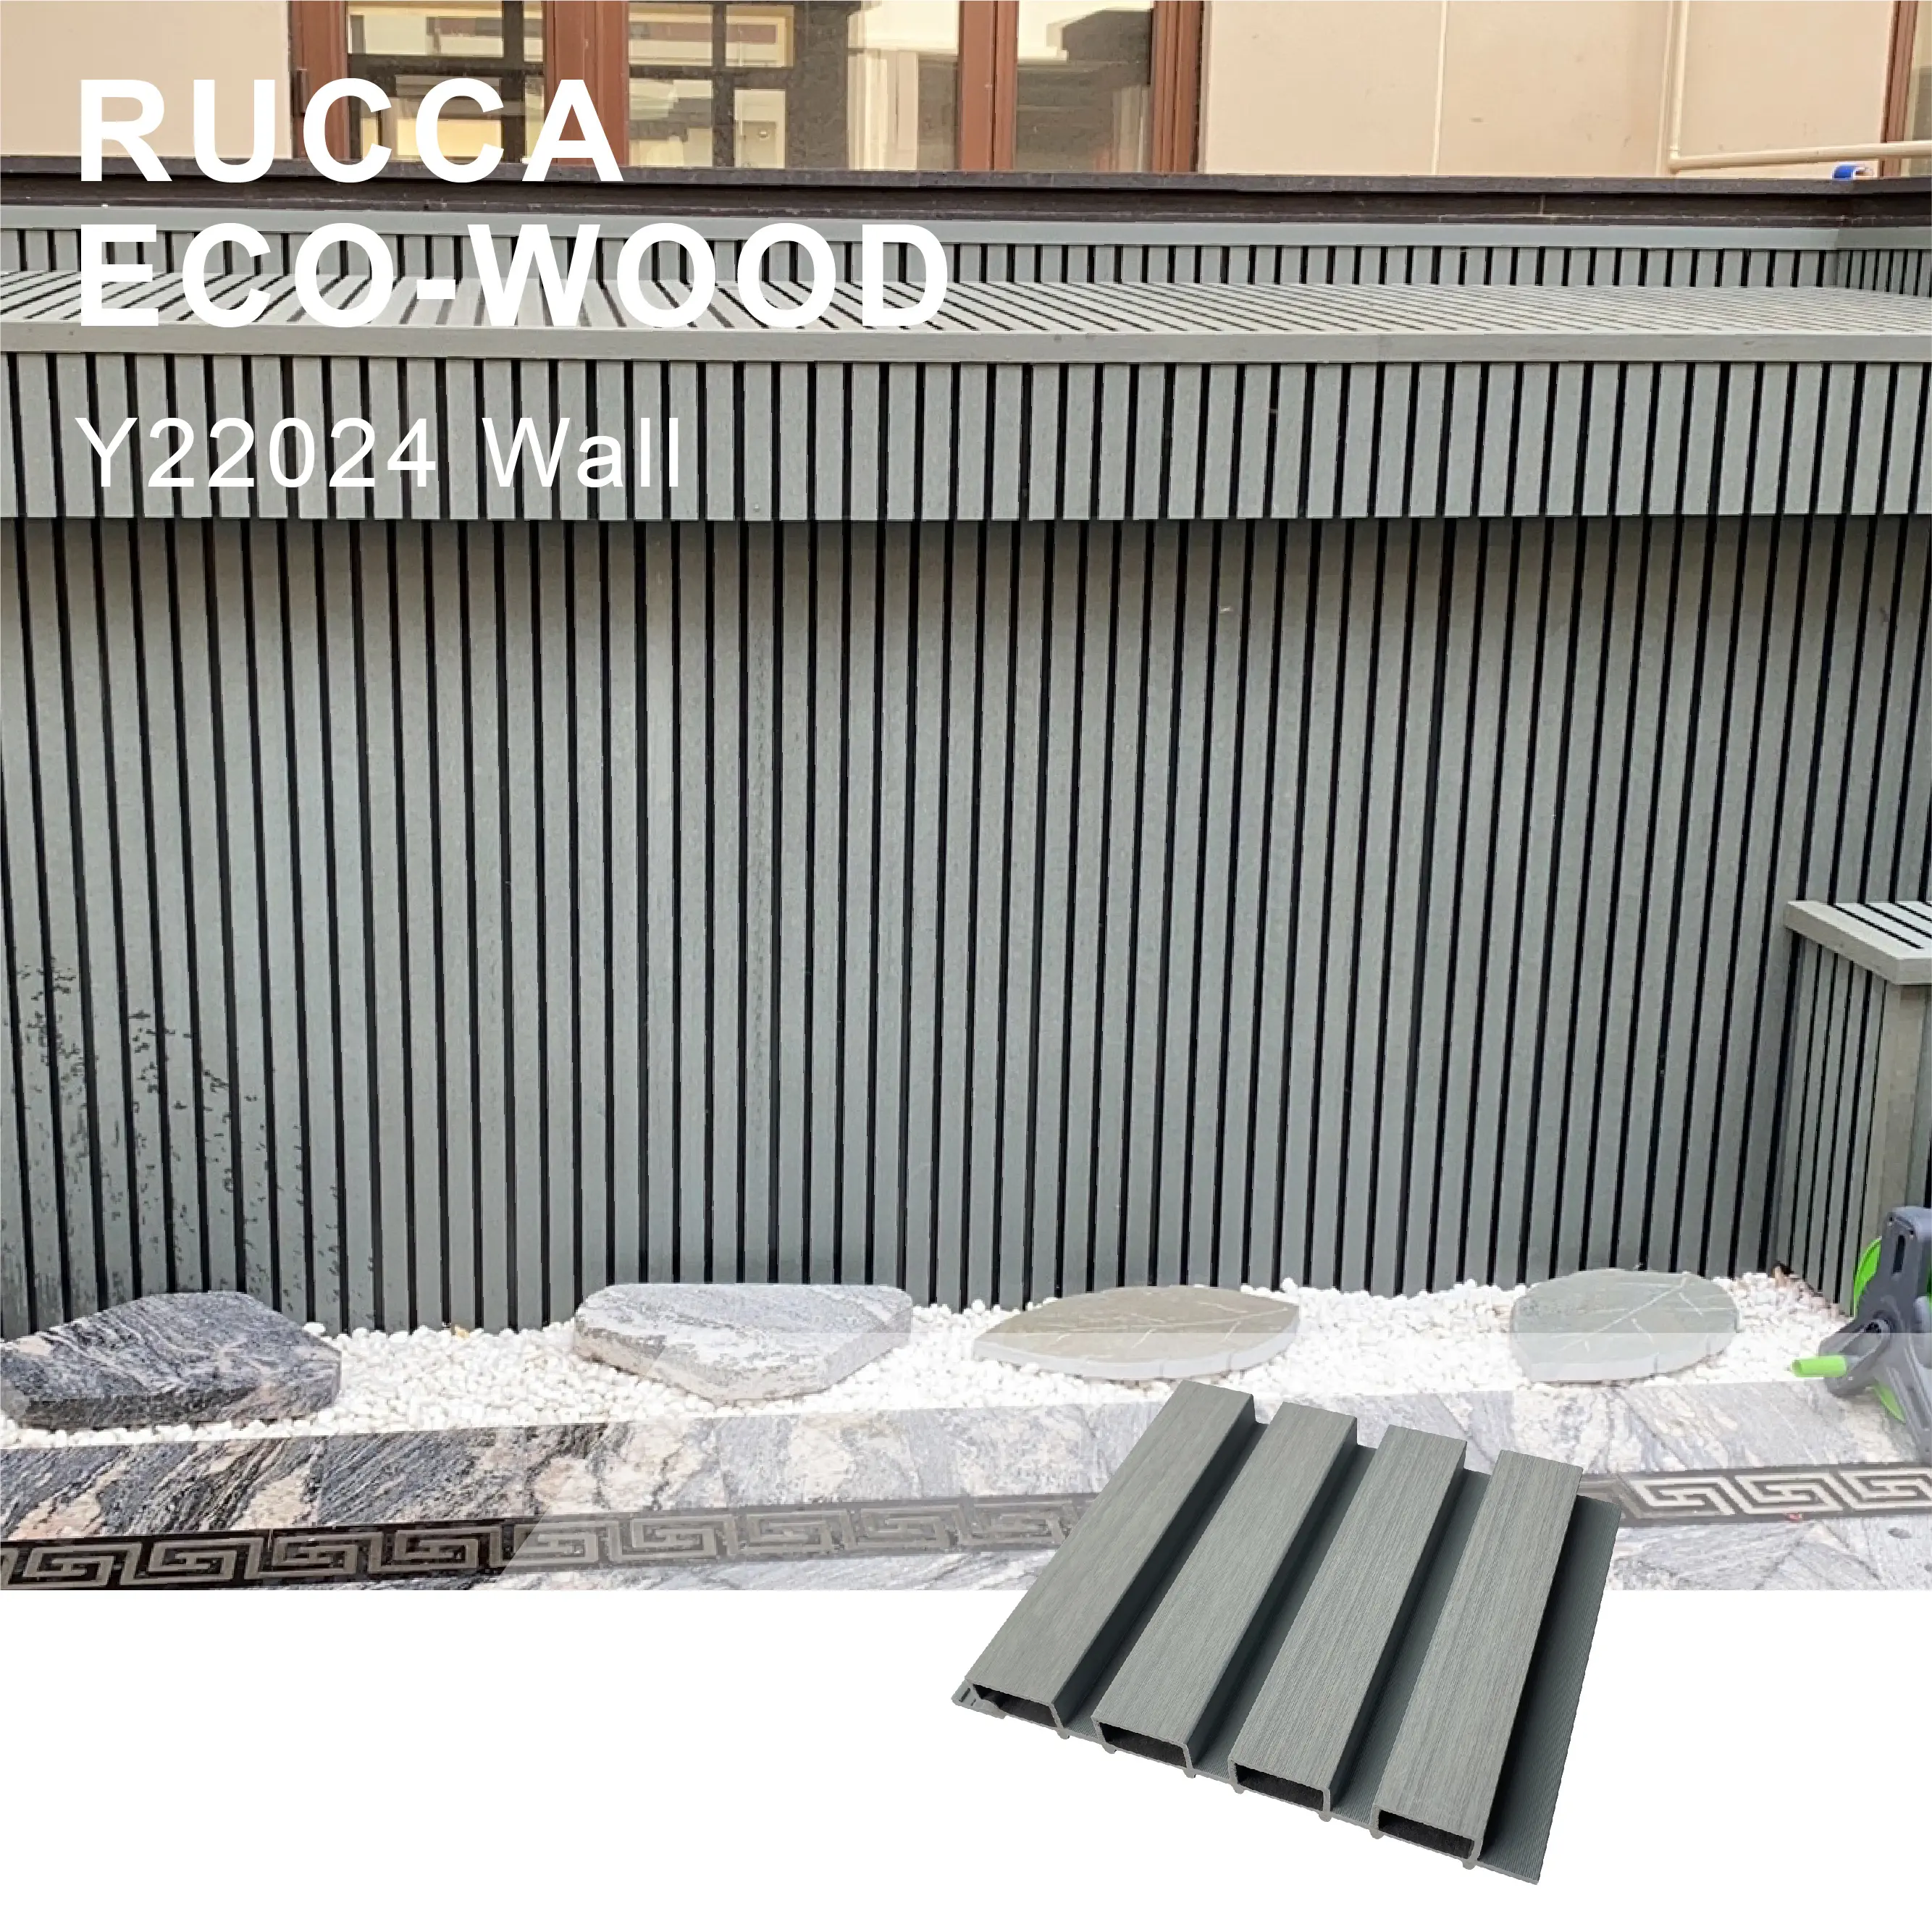 Наружные панели RUCCA из ПВХ 220*24 мм для облицовки стен